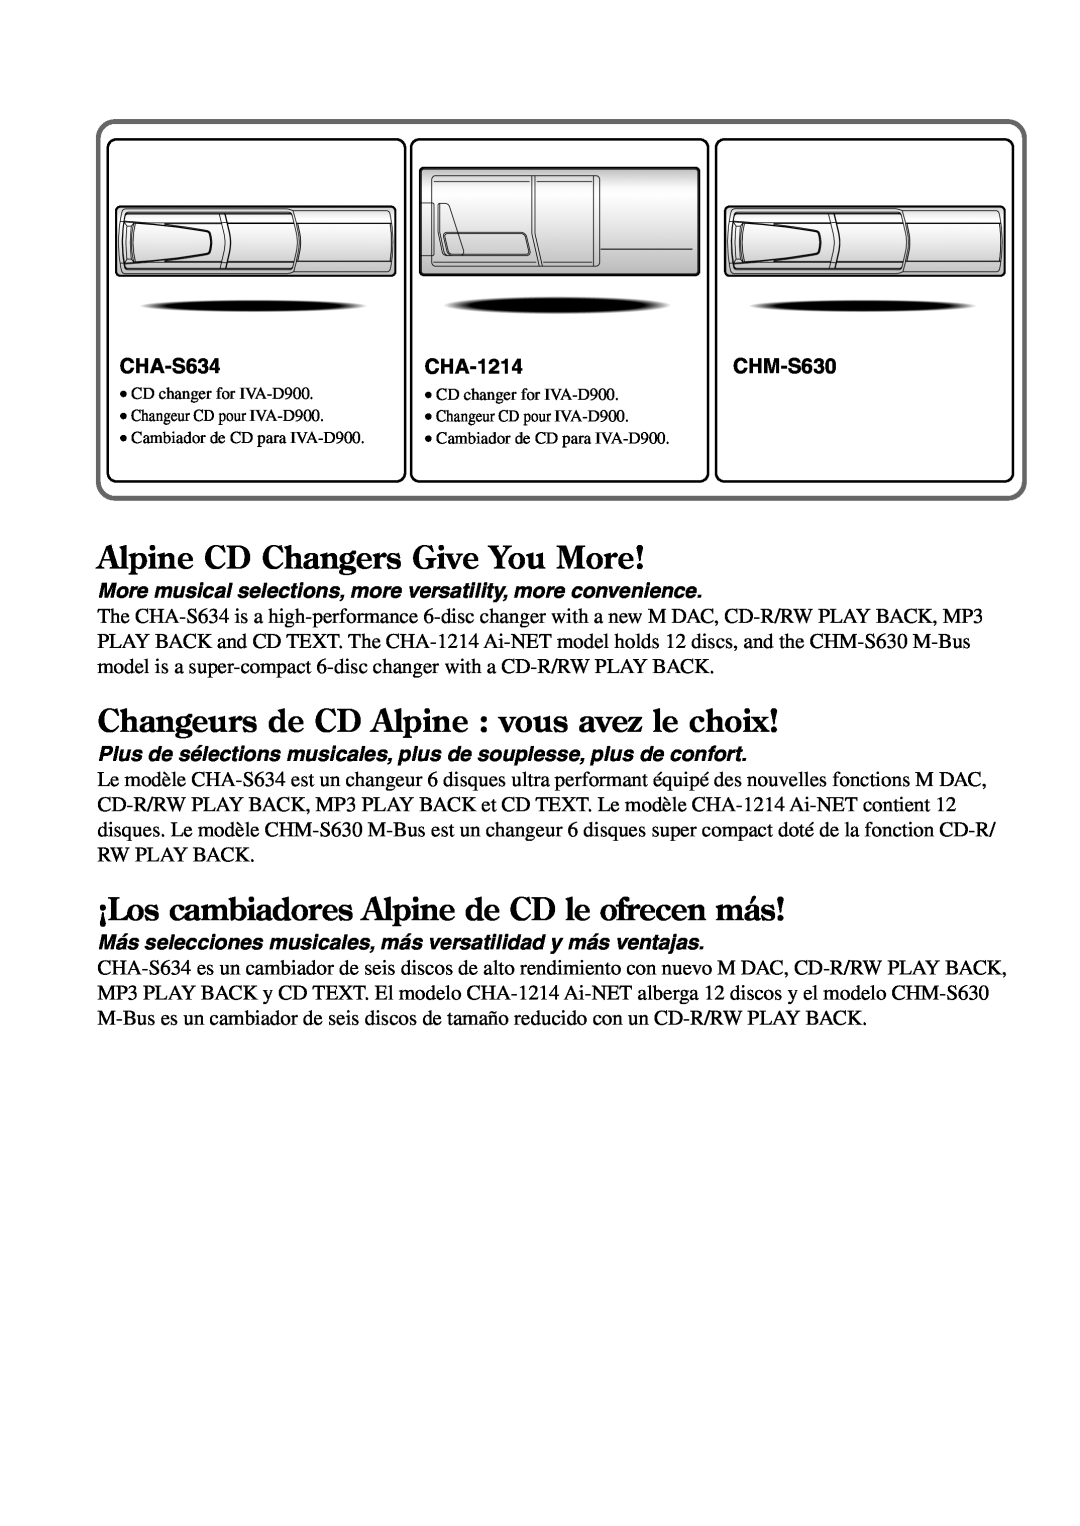 Alpine IVA-D900 Alpine CD Changers Give You More, Changeurs de CD Alpine : vous avez le choix, CHA-S634, CHA-1214CHM-S630 